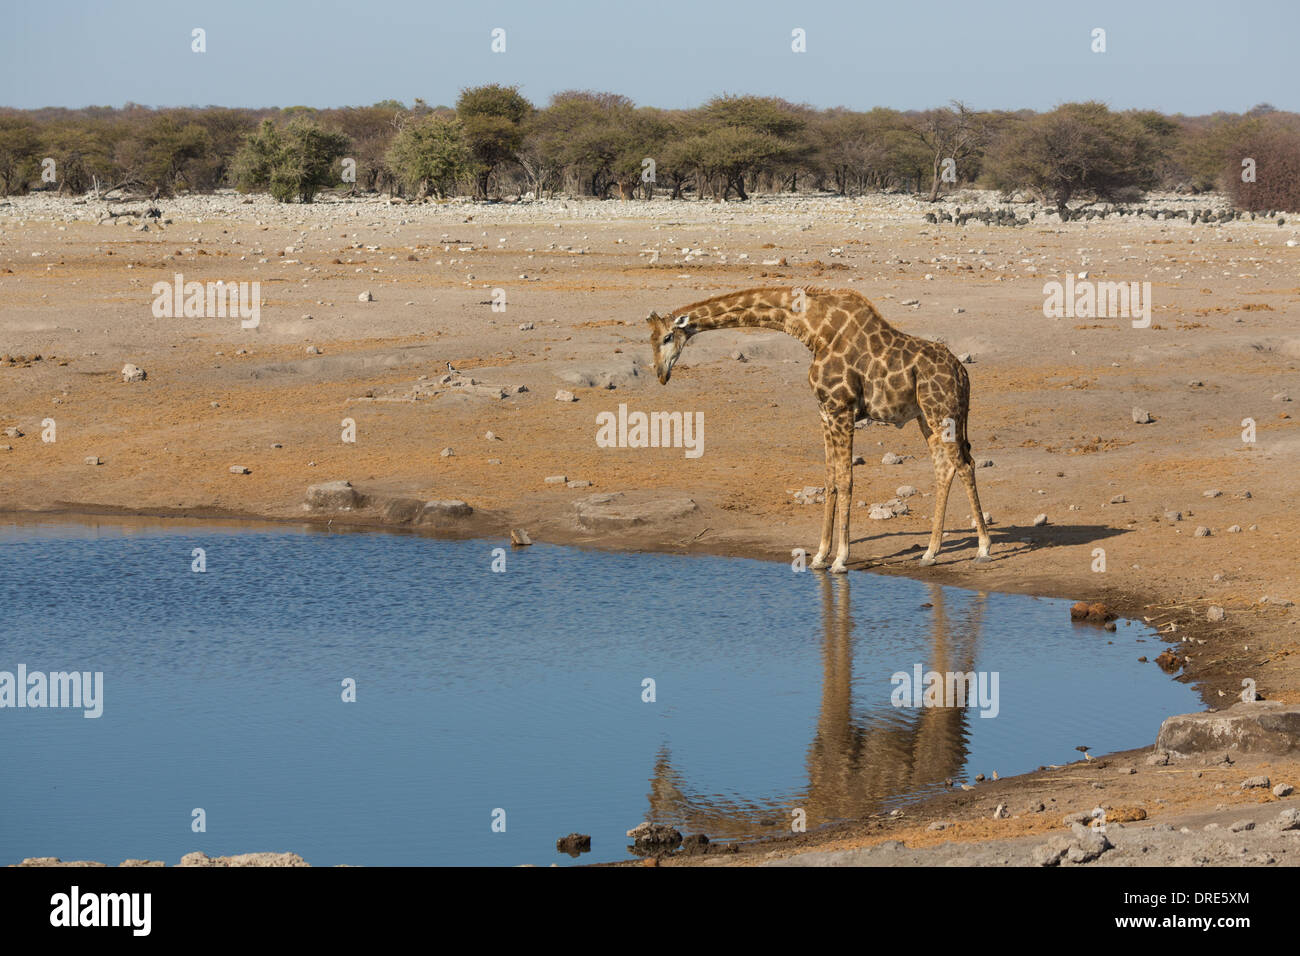 Giraffe drinking water Stock Photo